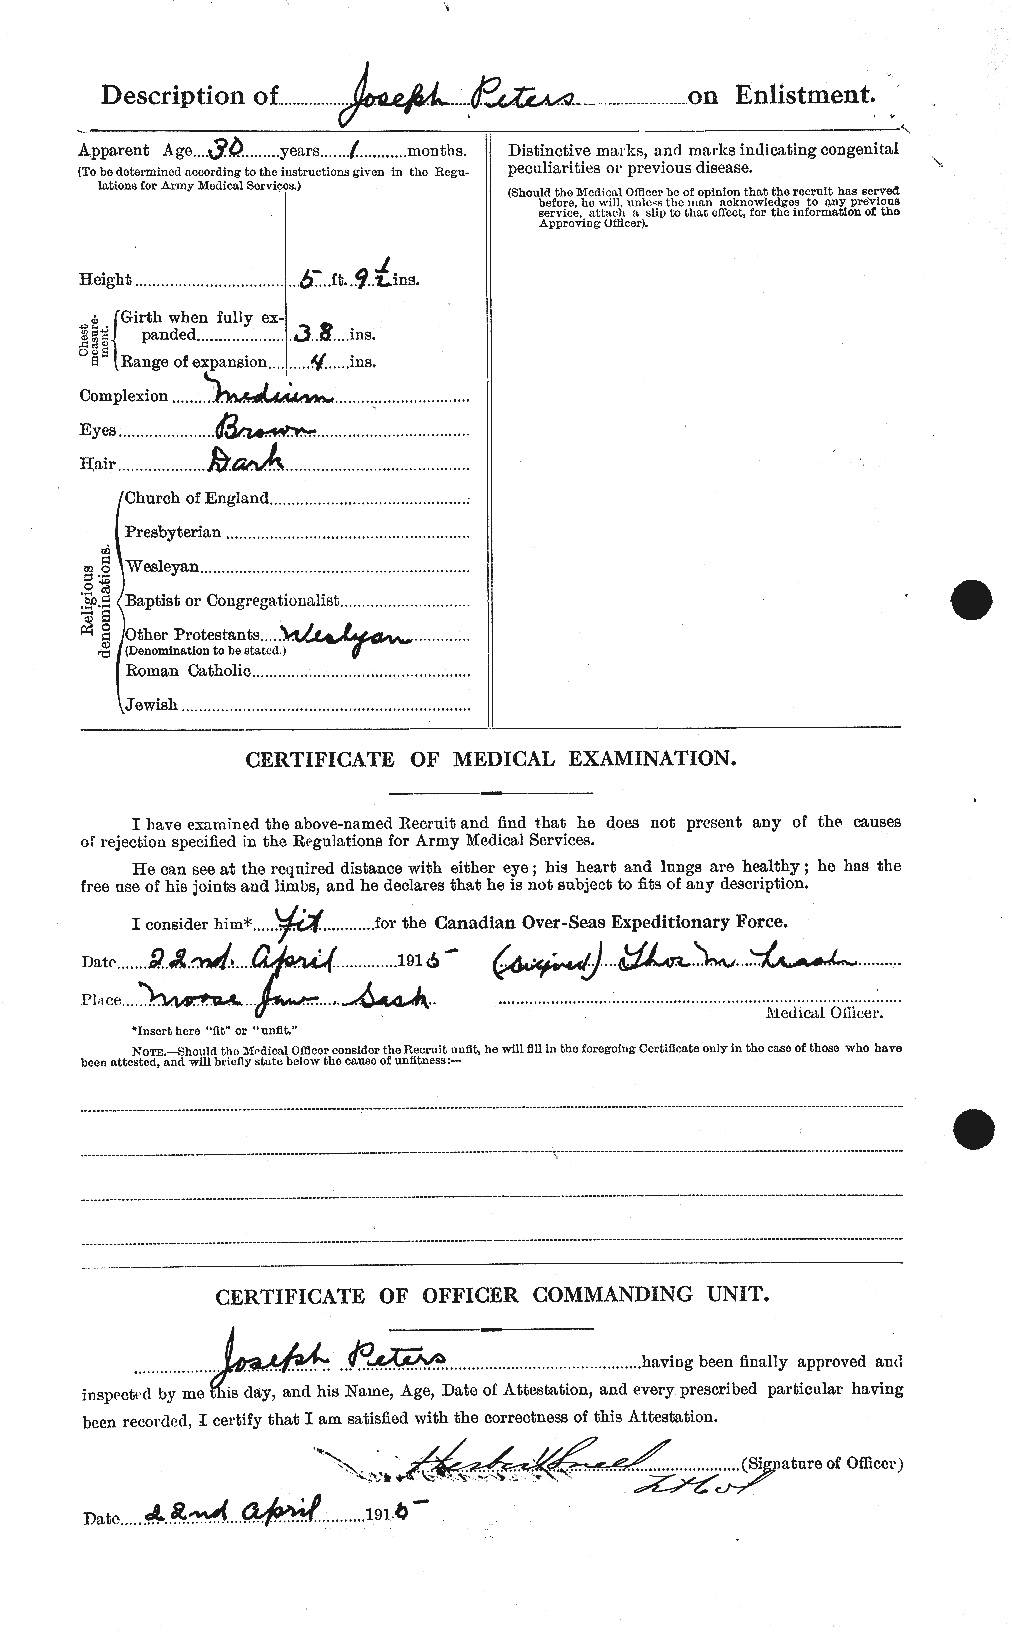 Dossiers du Personnel de la Première Guerre mondiale - CEC 575554b